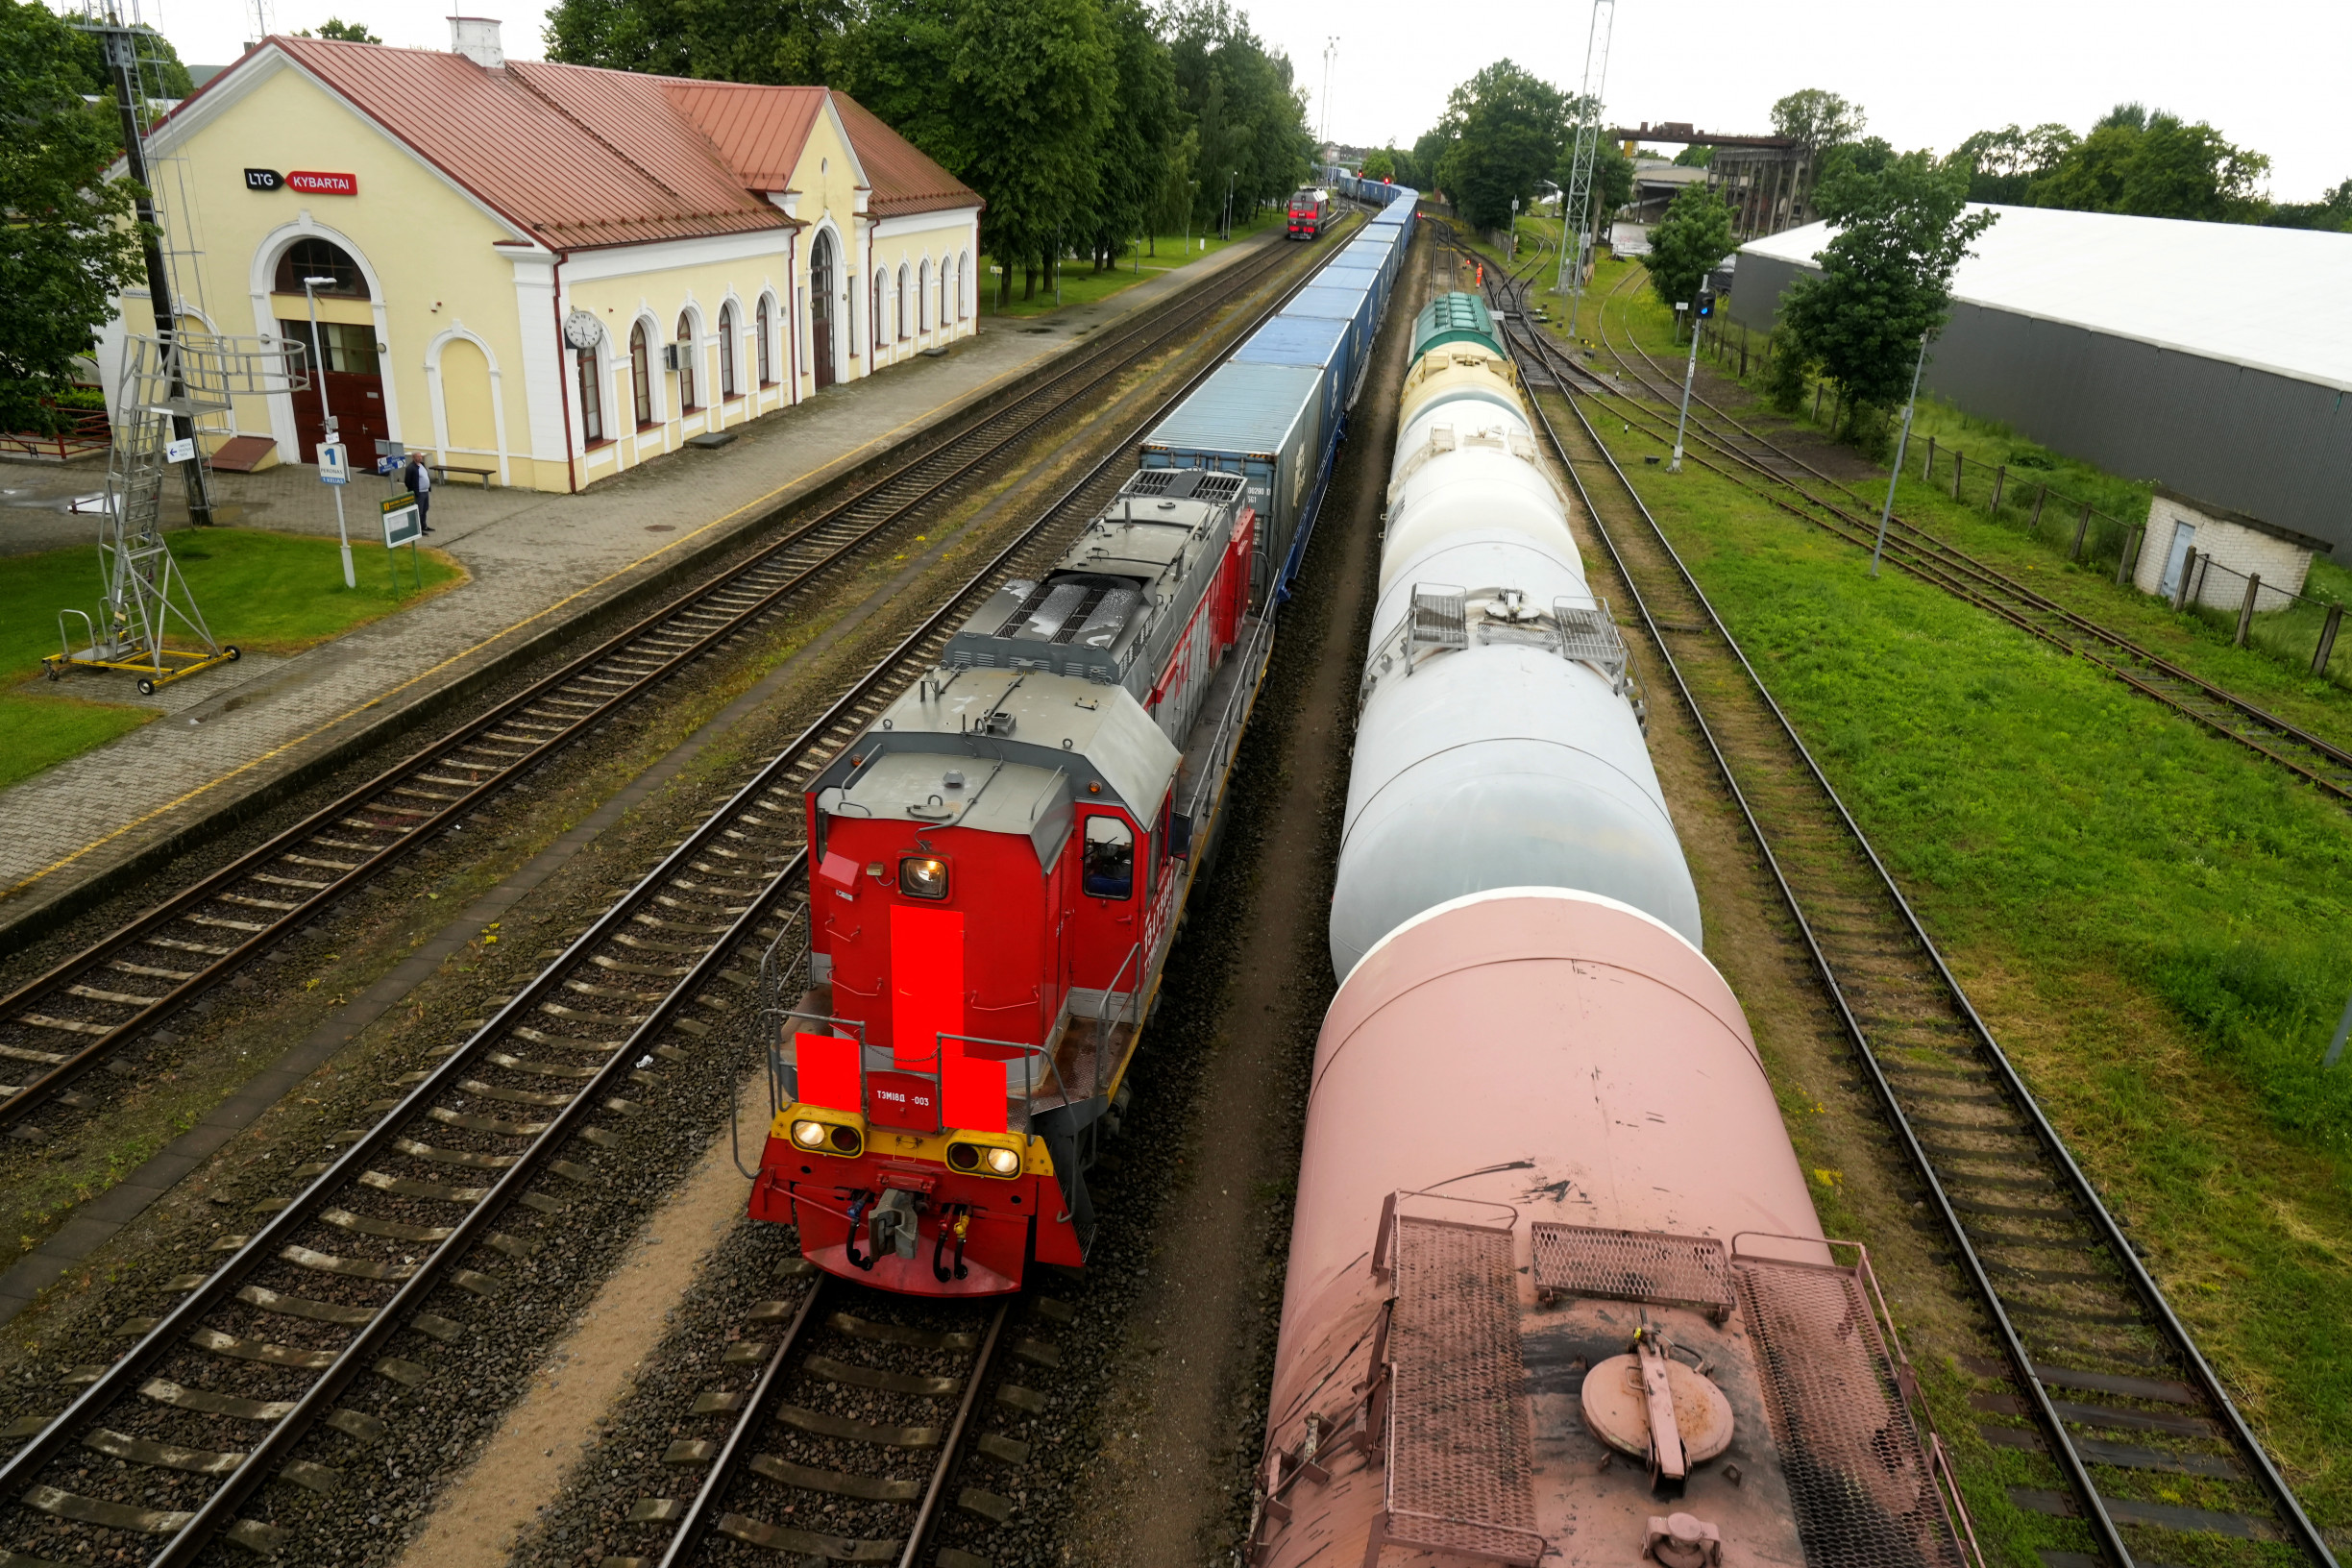 Rusko vyhrožuje Litvě, která zakázala přepravu kovů do Kaliningradu. Nejde o blokádu, tvrdí